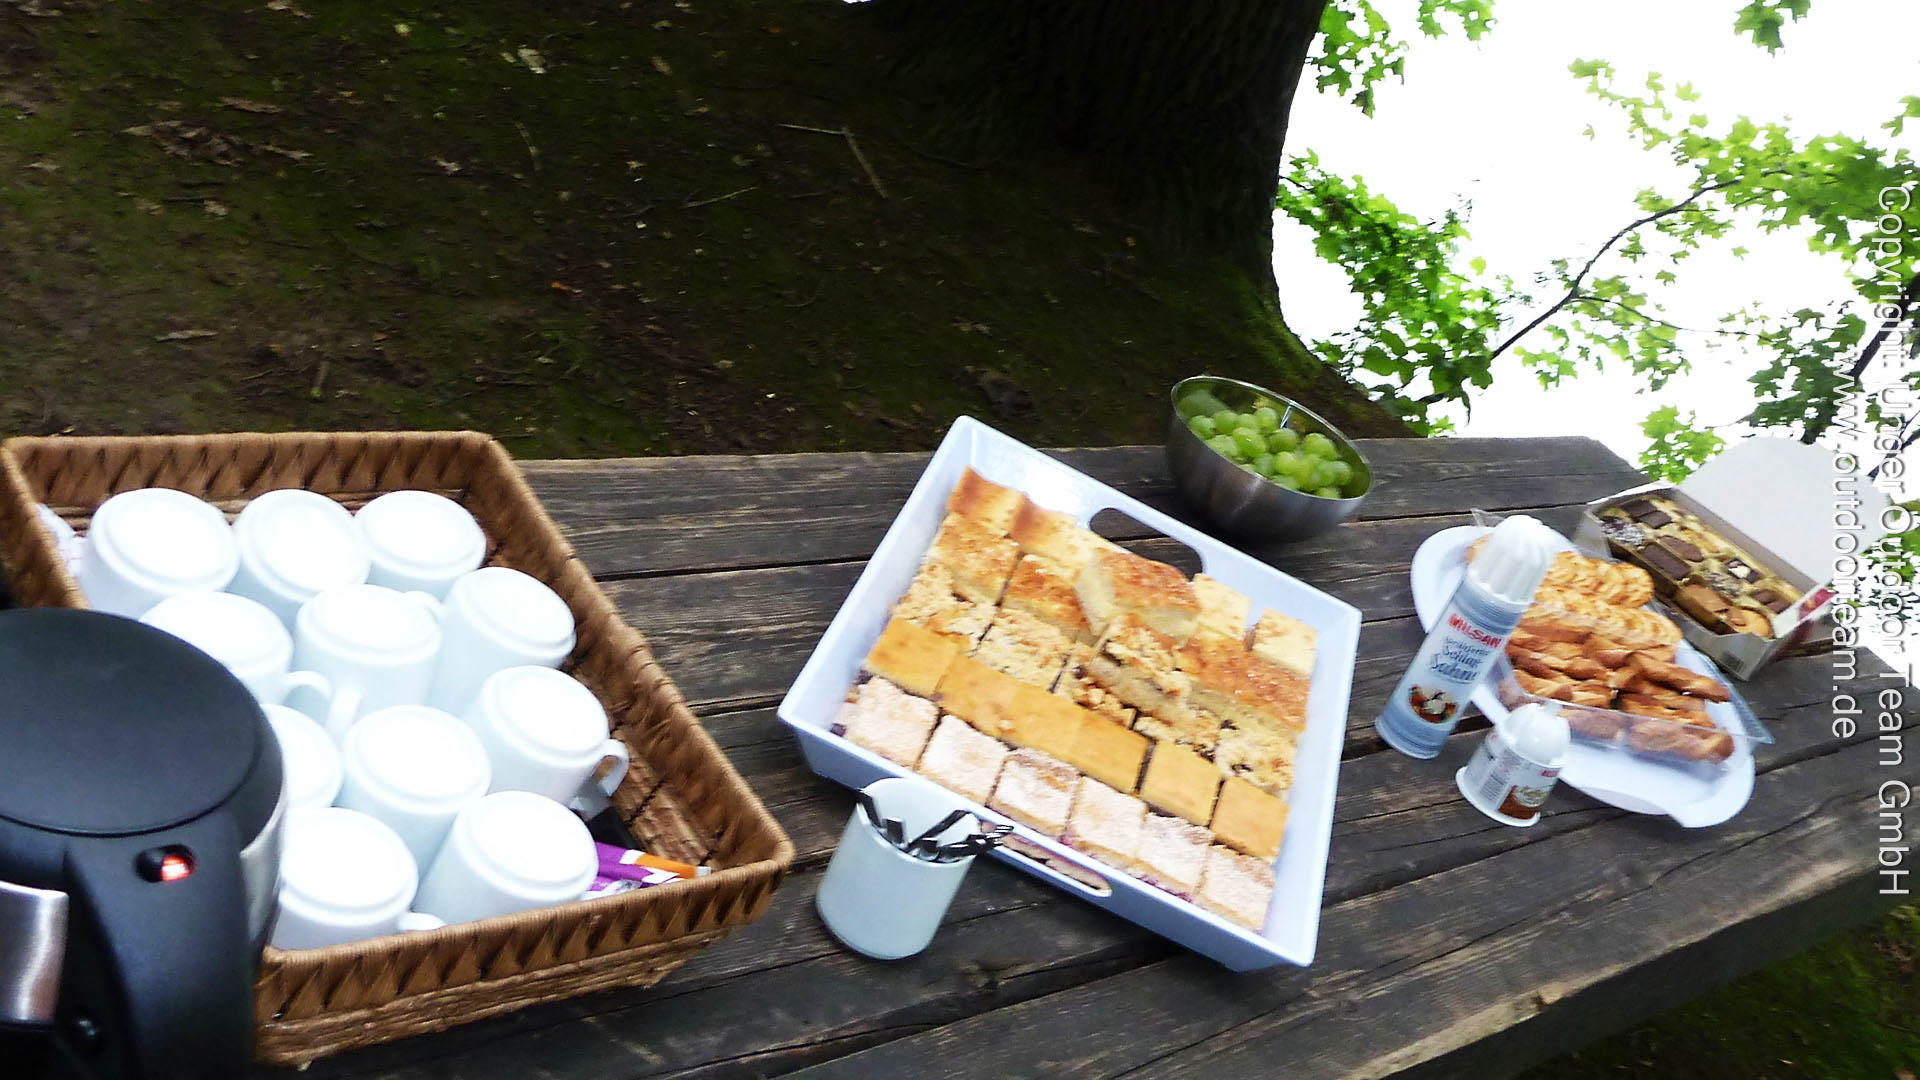 Kaffee-Kuchen-Nachmittags-Schlauchboottour. Es gibt Kuchen, Apfelstrudel und süßes Gebäck